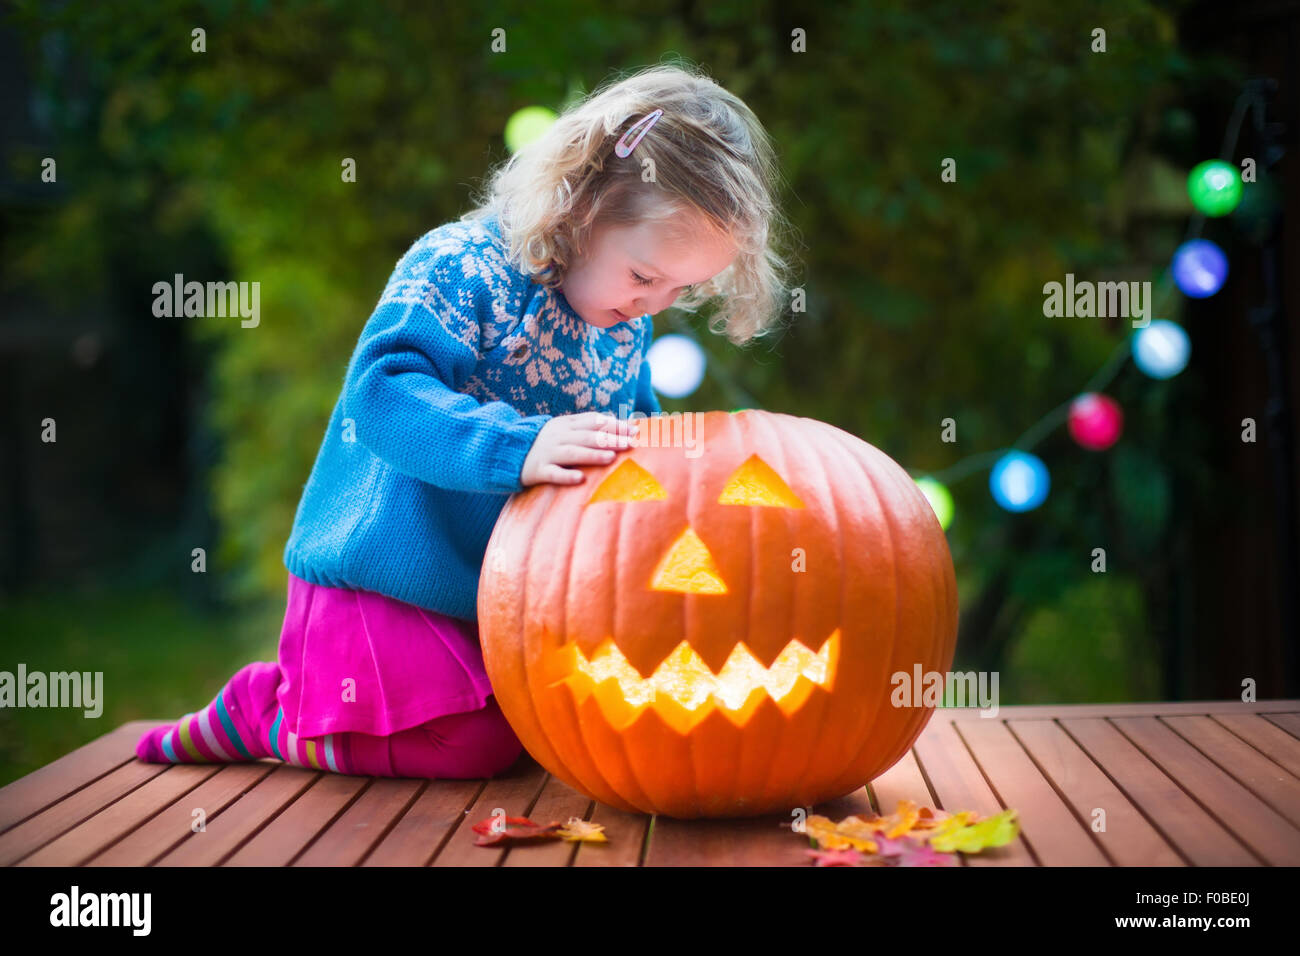 Petite fille à l'Halloween Pumpkin carving. Habillé tour ou traitement de l'enfant. Kids trick ou traiter. Enfant en costume Banque D'Images